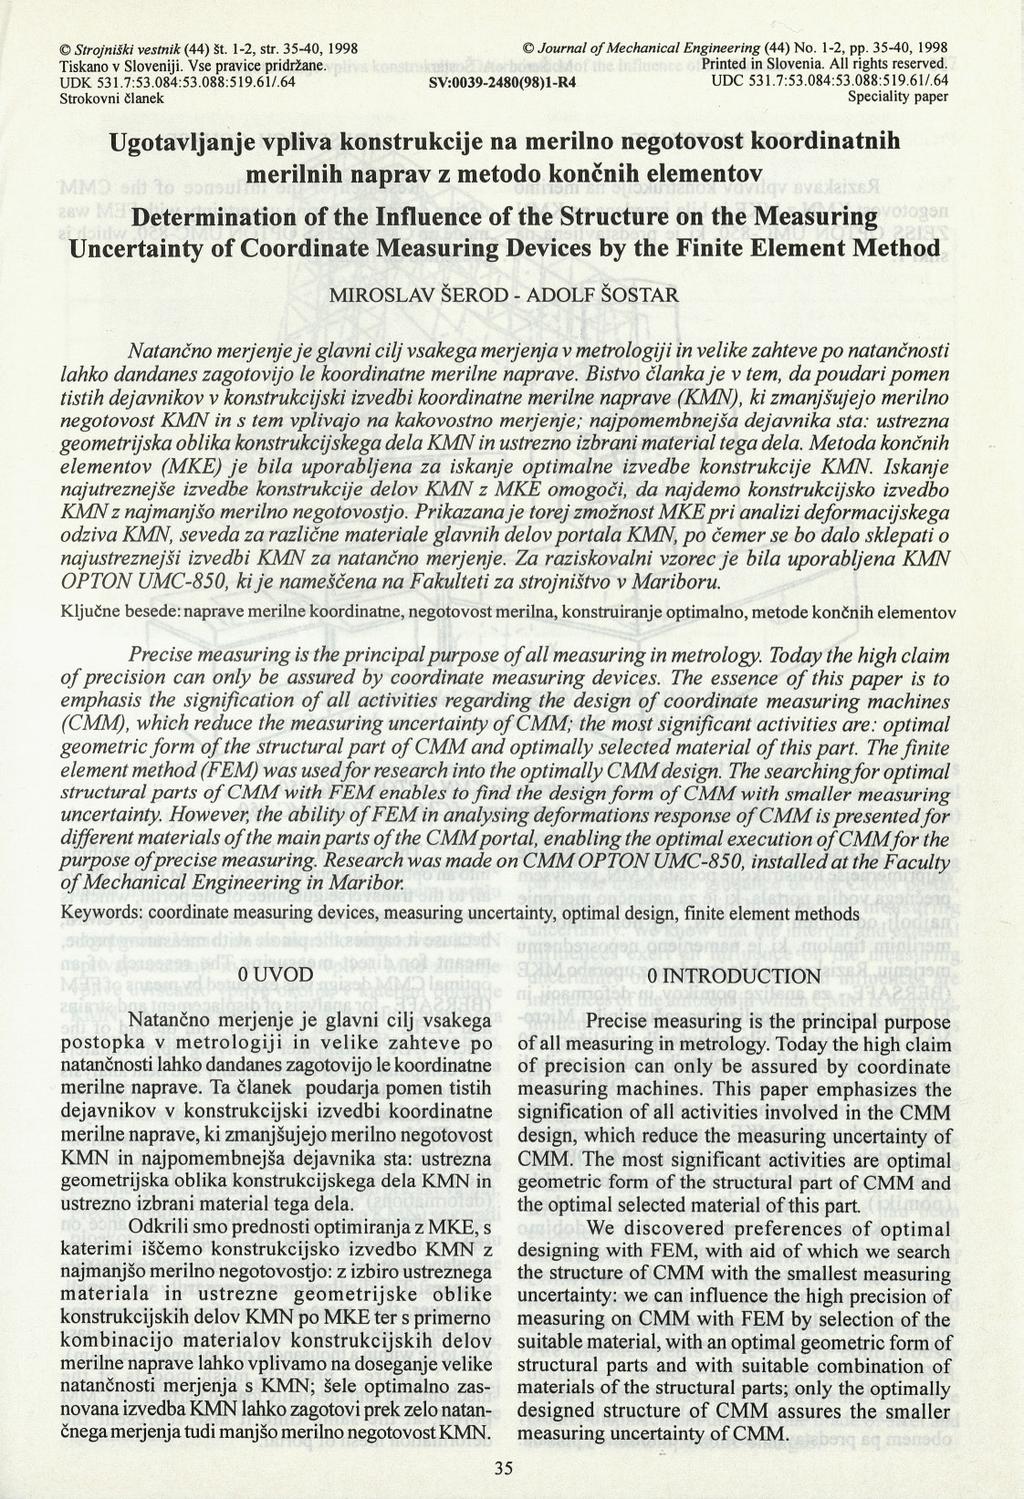 Strojniški vestnik (44) št. 1-2, str. 35-40, 1998 Journal of Mechanical Engineering (44) No. 1-2, pp. 35-40, 1998 Tiskano v Sloveniji. Vse pravice pridržane. Printed in Slovenia. All rights reserved.